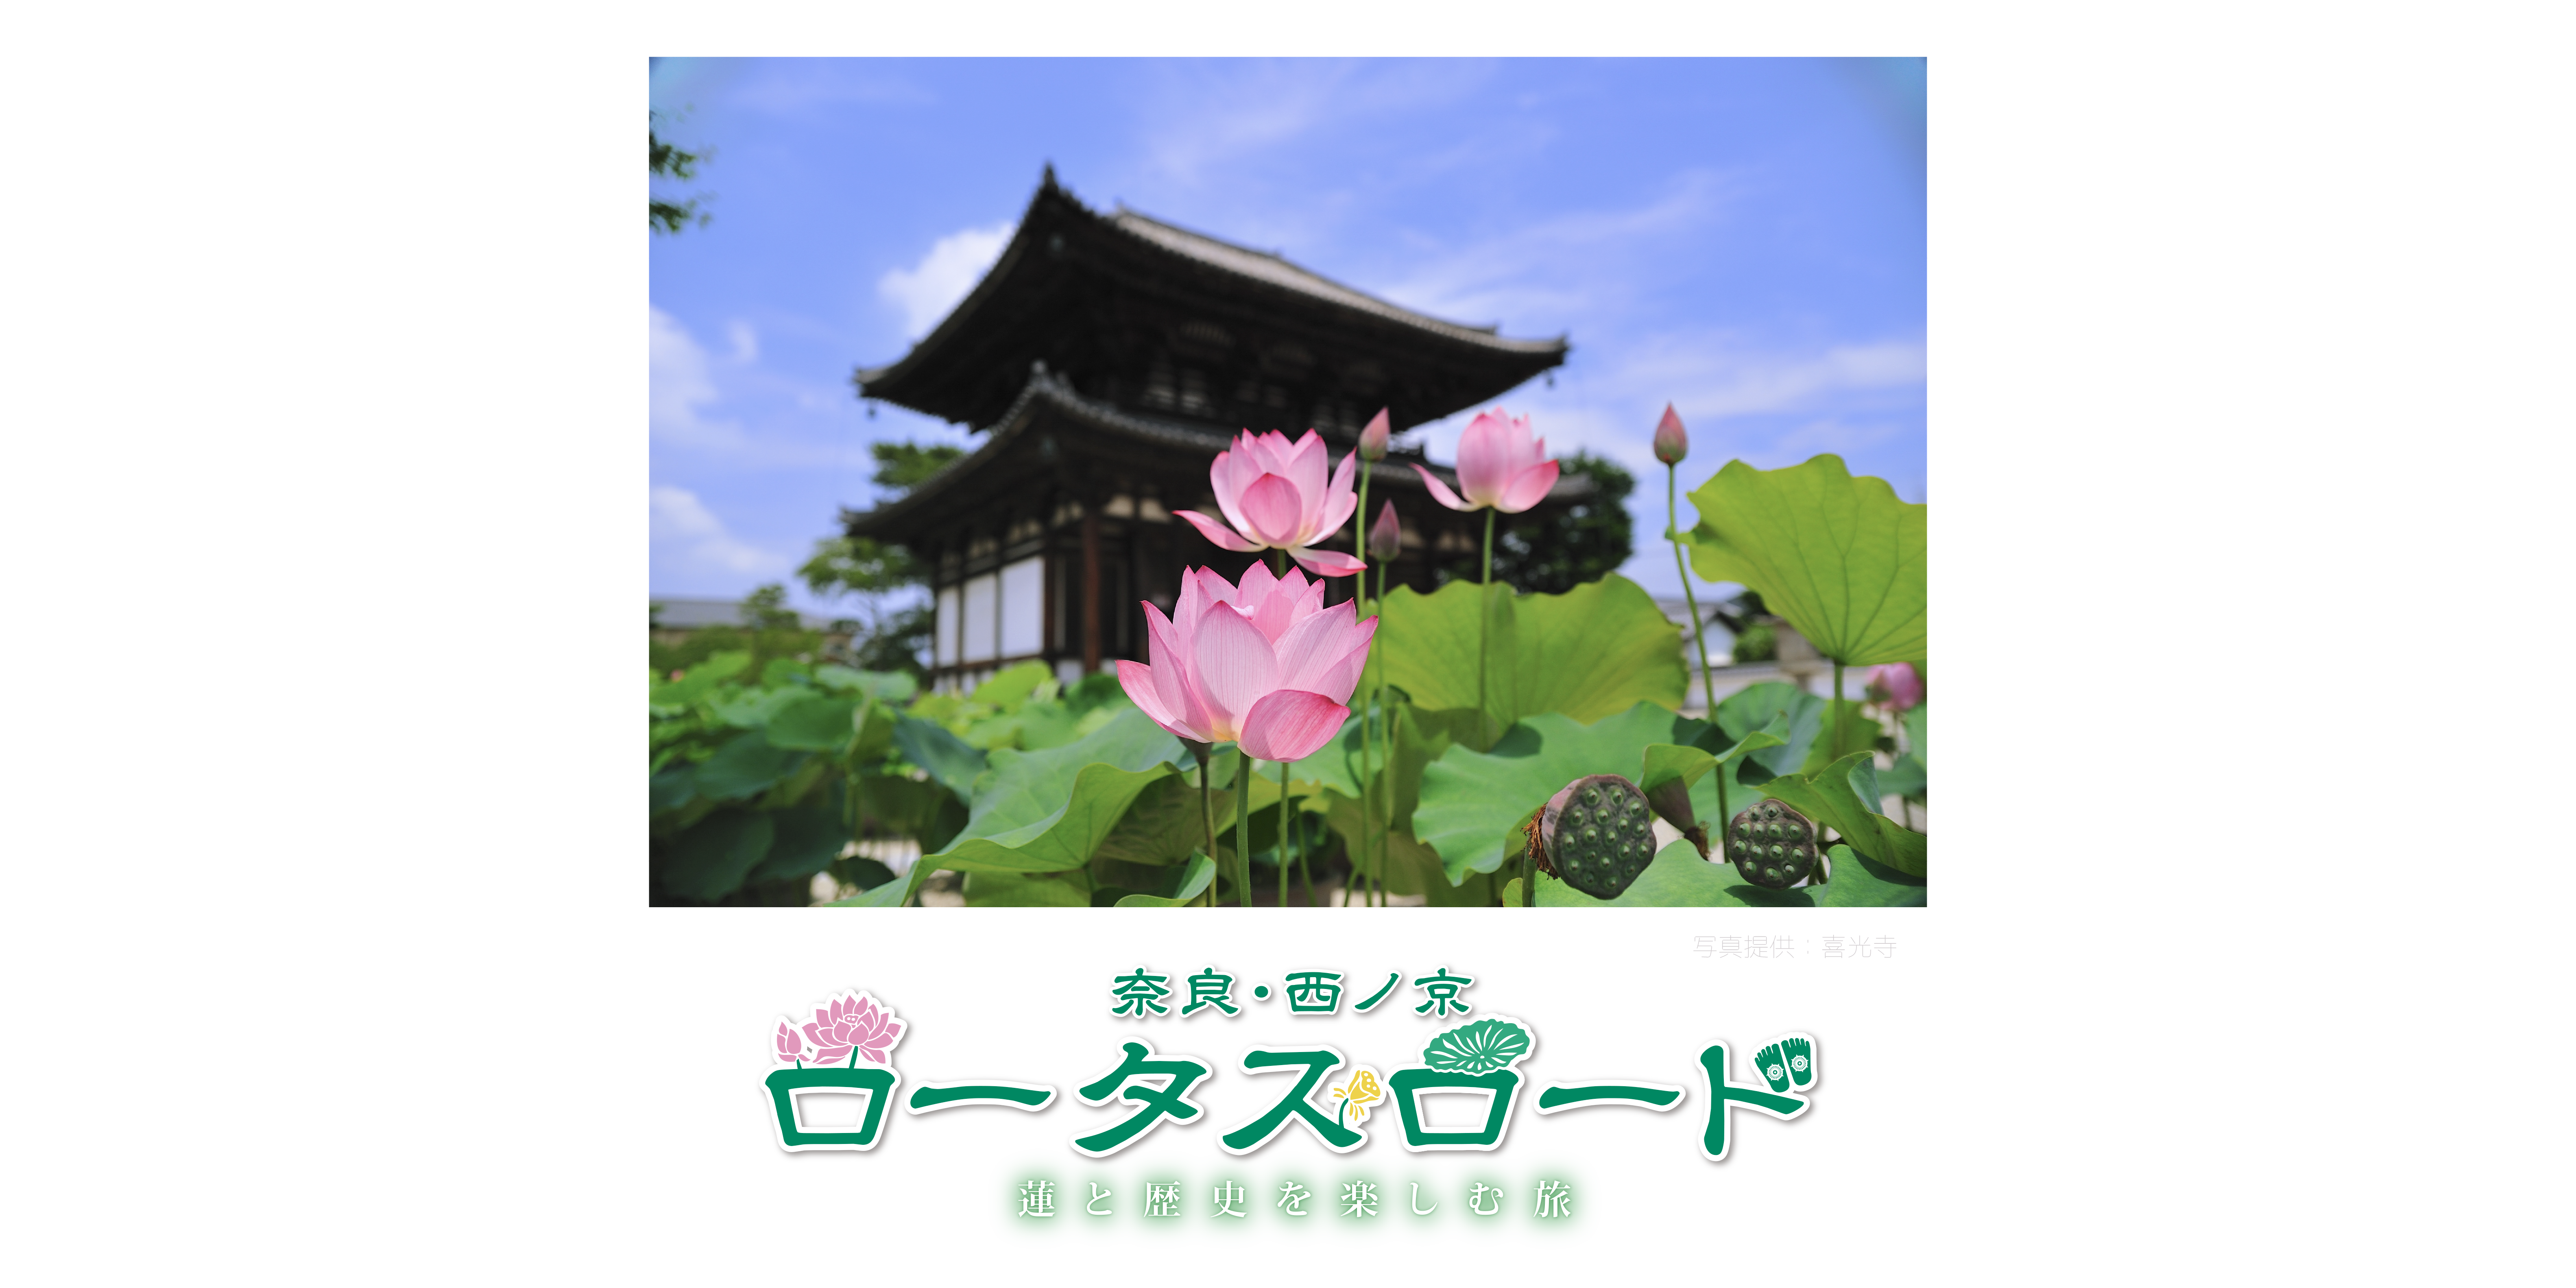 蓮の花を見に行こう 奈良 西ノ京ロータスロード 奈良市観光協会サイト